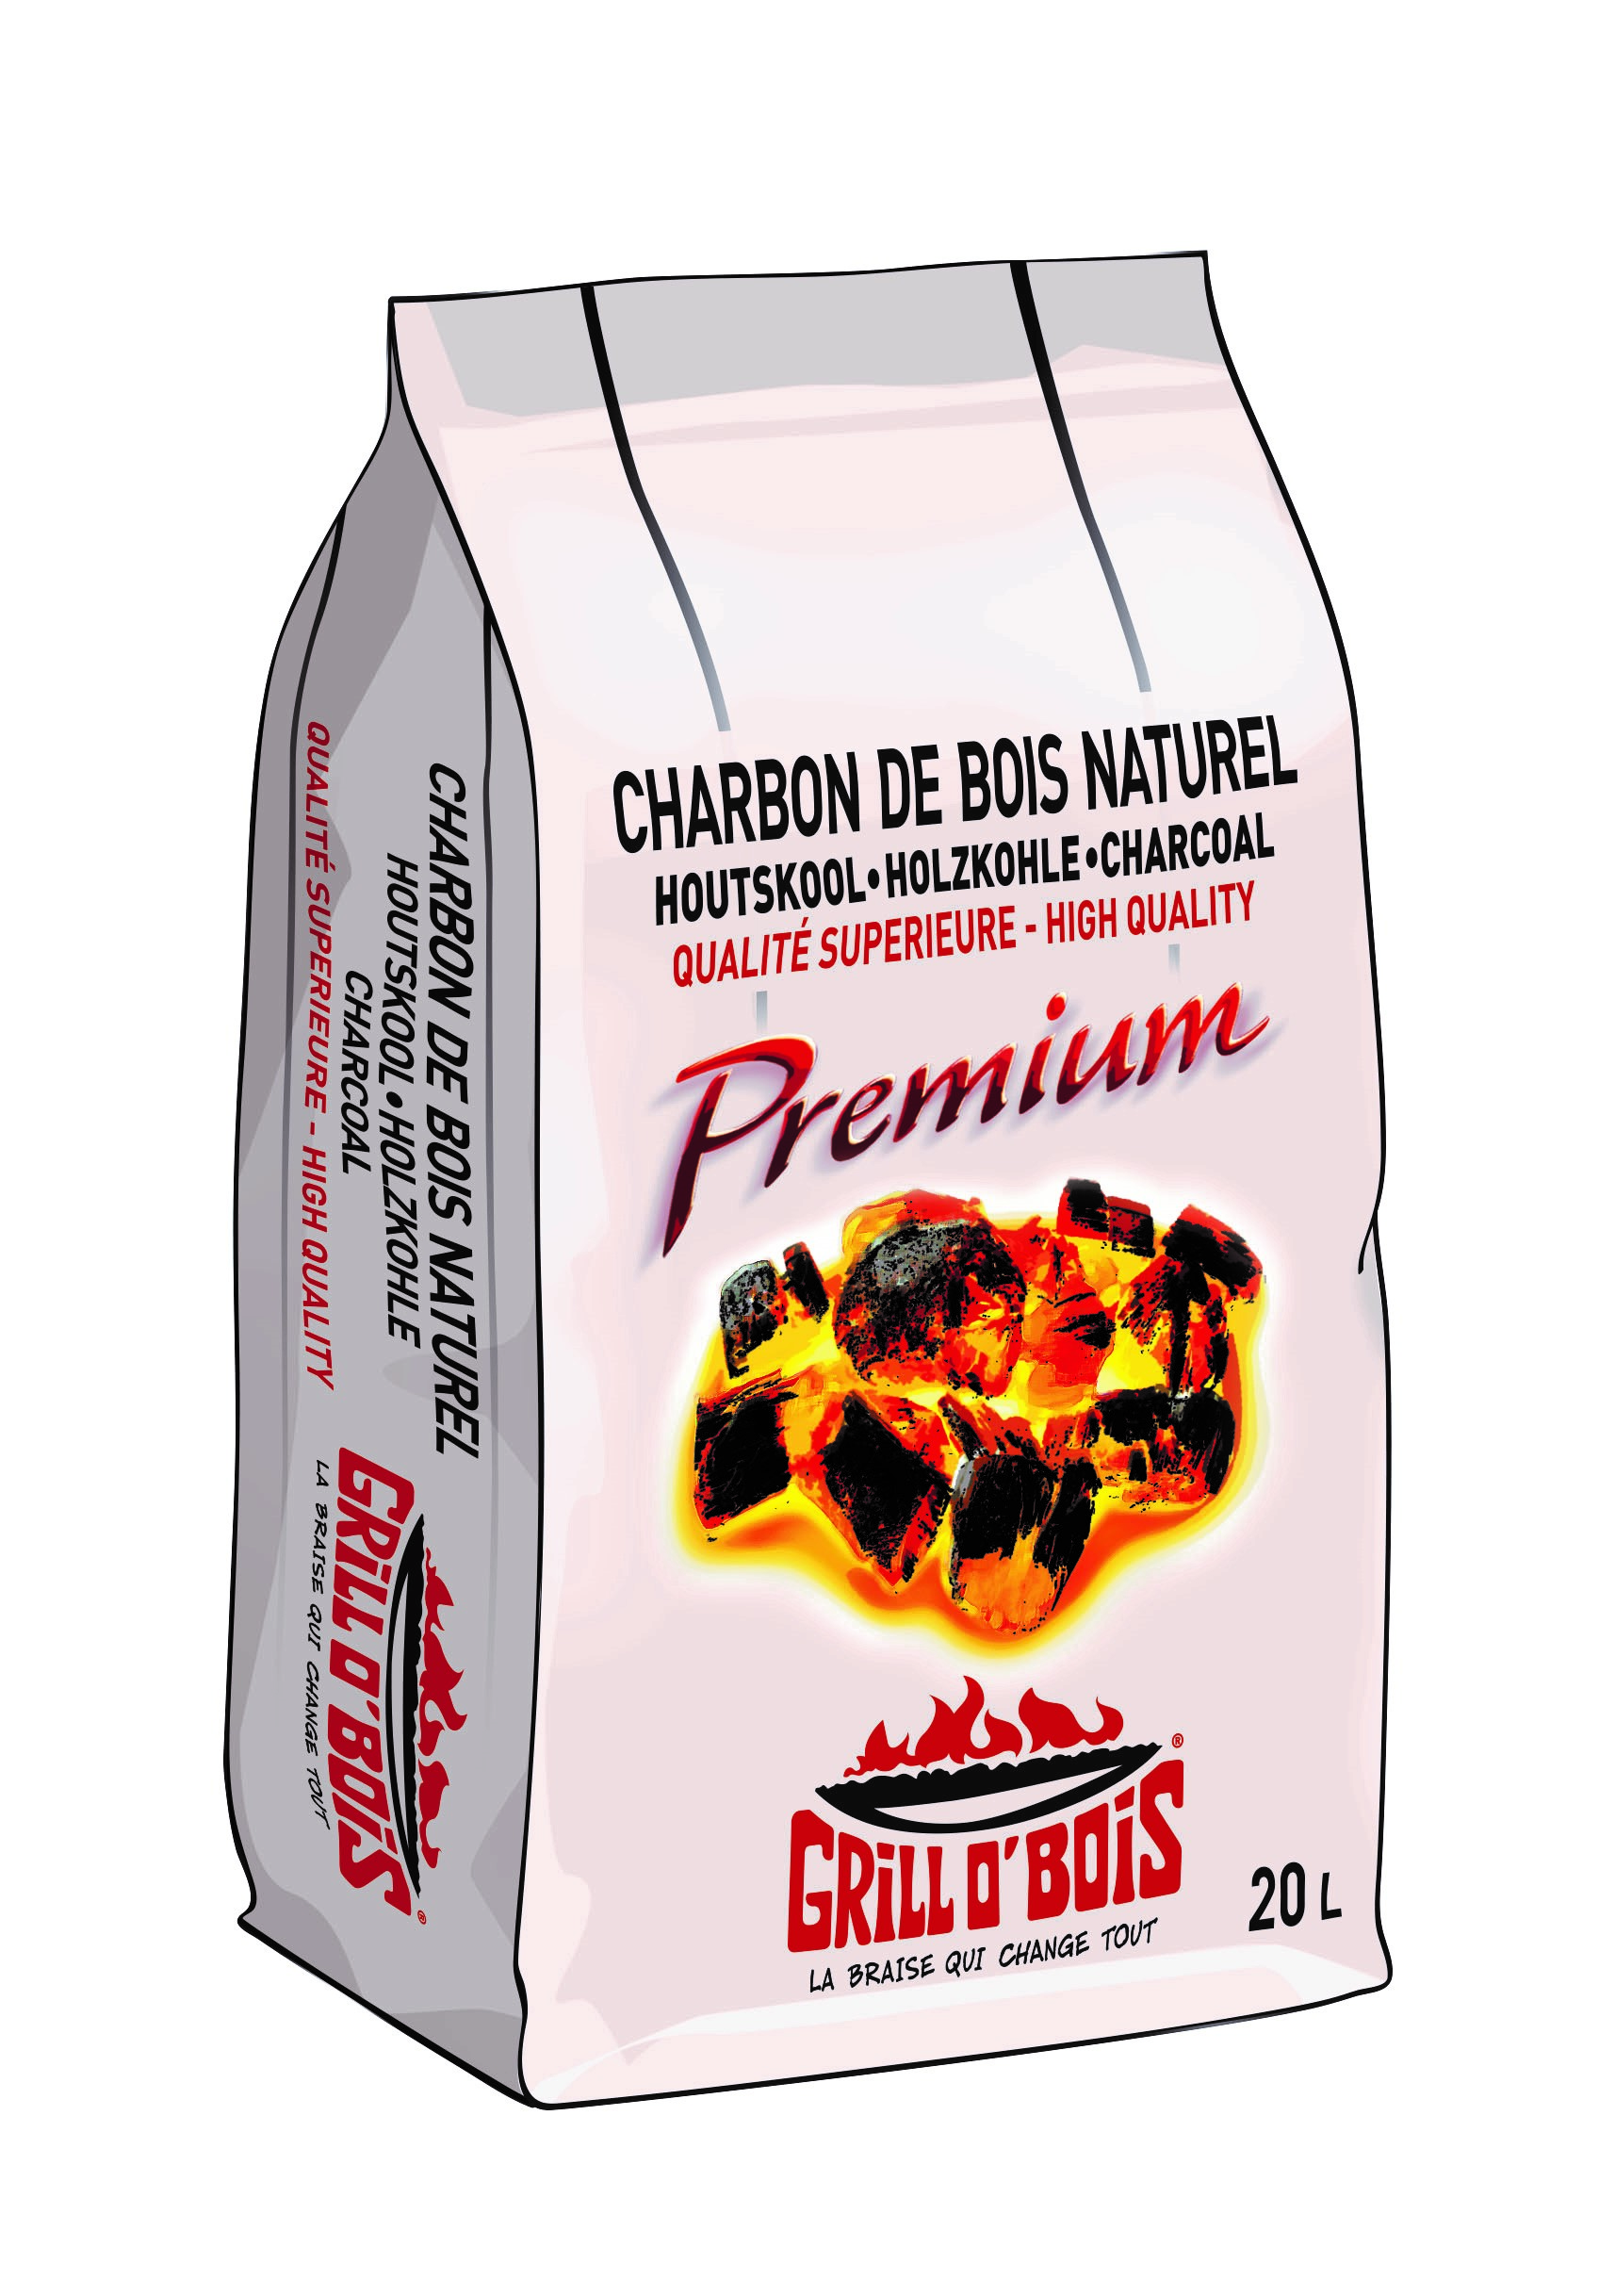 Grill O' bois Premium (20 L)